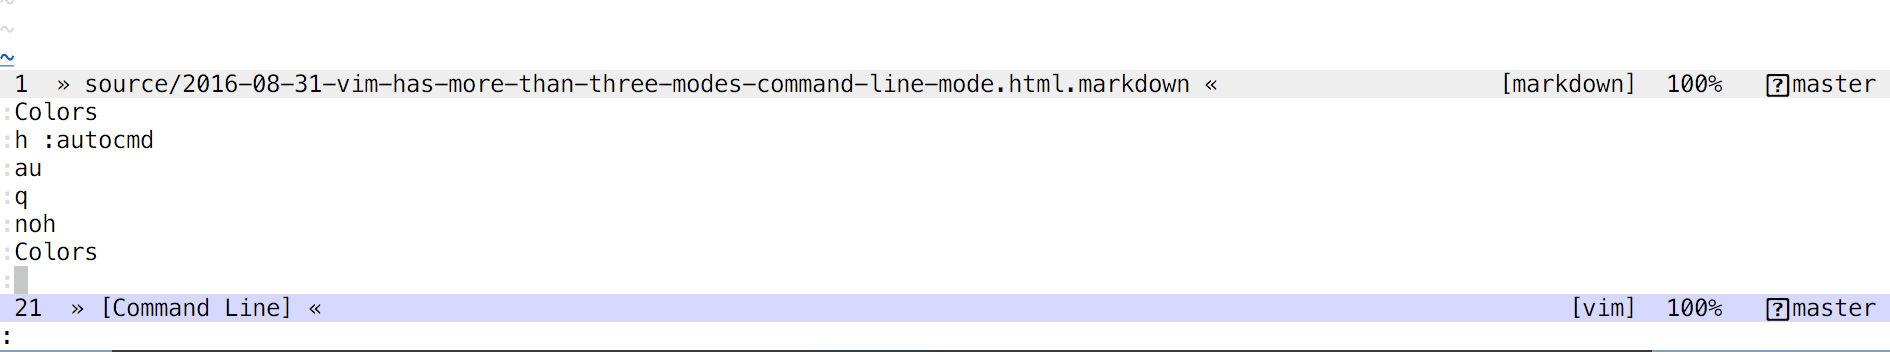 command-line mode